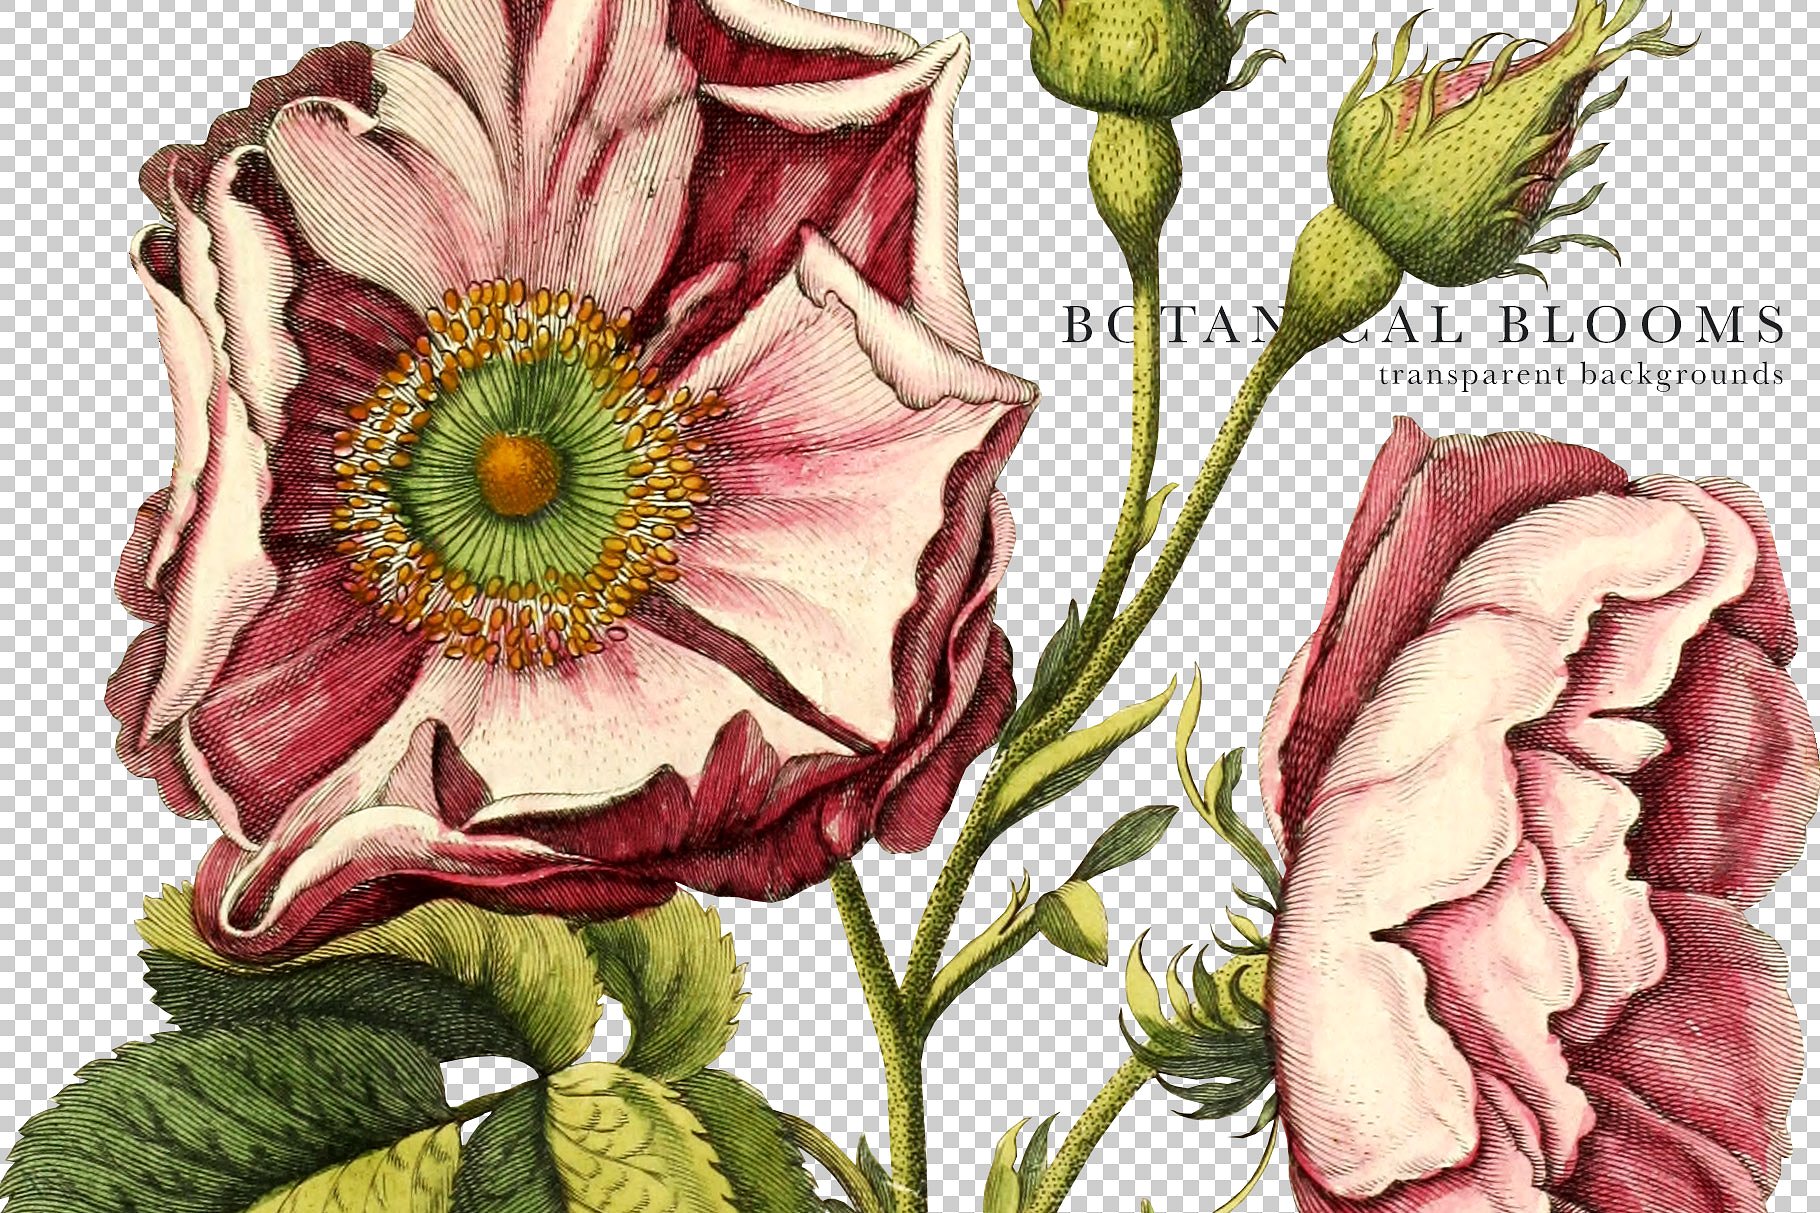 复古手绘花卉植物字母设计素材 Botanical-Bloo